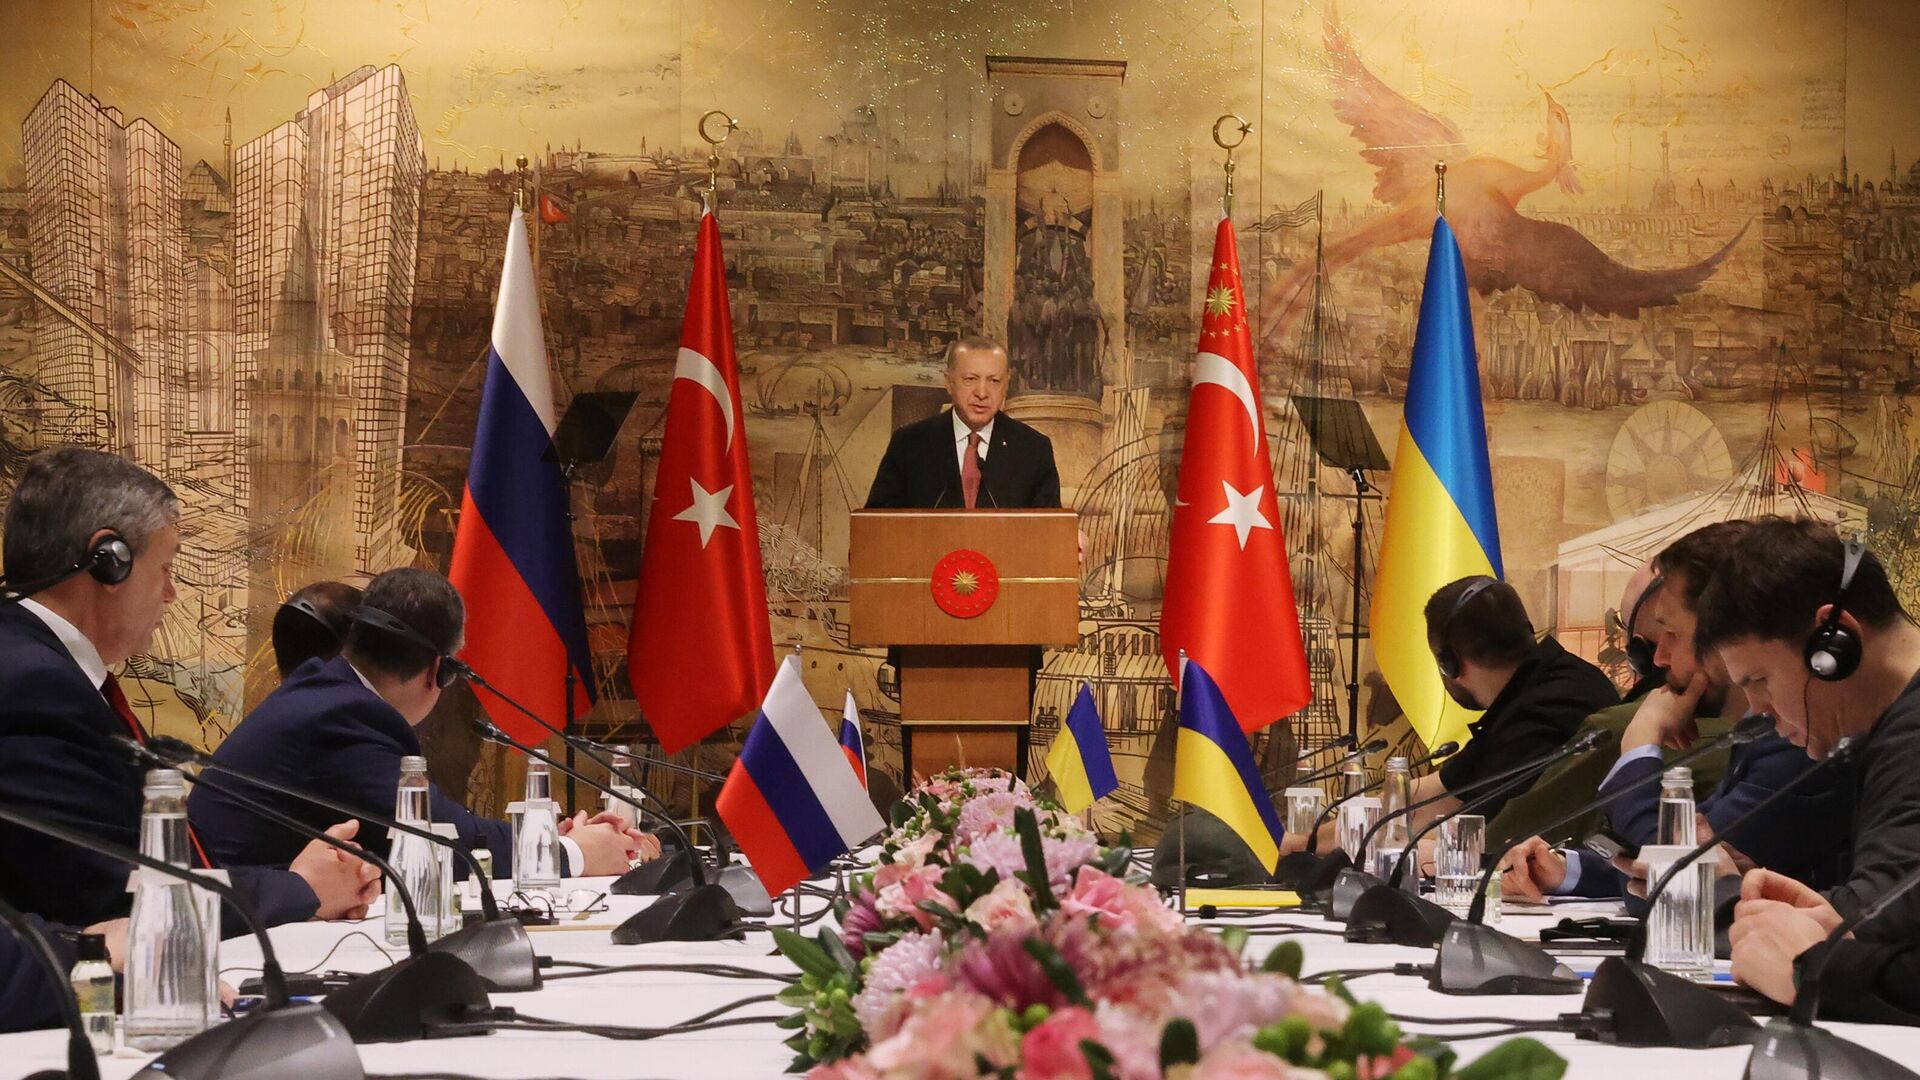 Tổng thống Thổ Nhĩ Kỳ Recep Tayyip Erdogan phát biểu trong cuộc hội đàm Nga-Ukraina tại Cung điện Dolmabahce ở Istanbul. - Sputnik Việt Nam, 1920, 29.03.2022